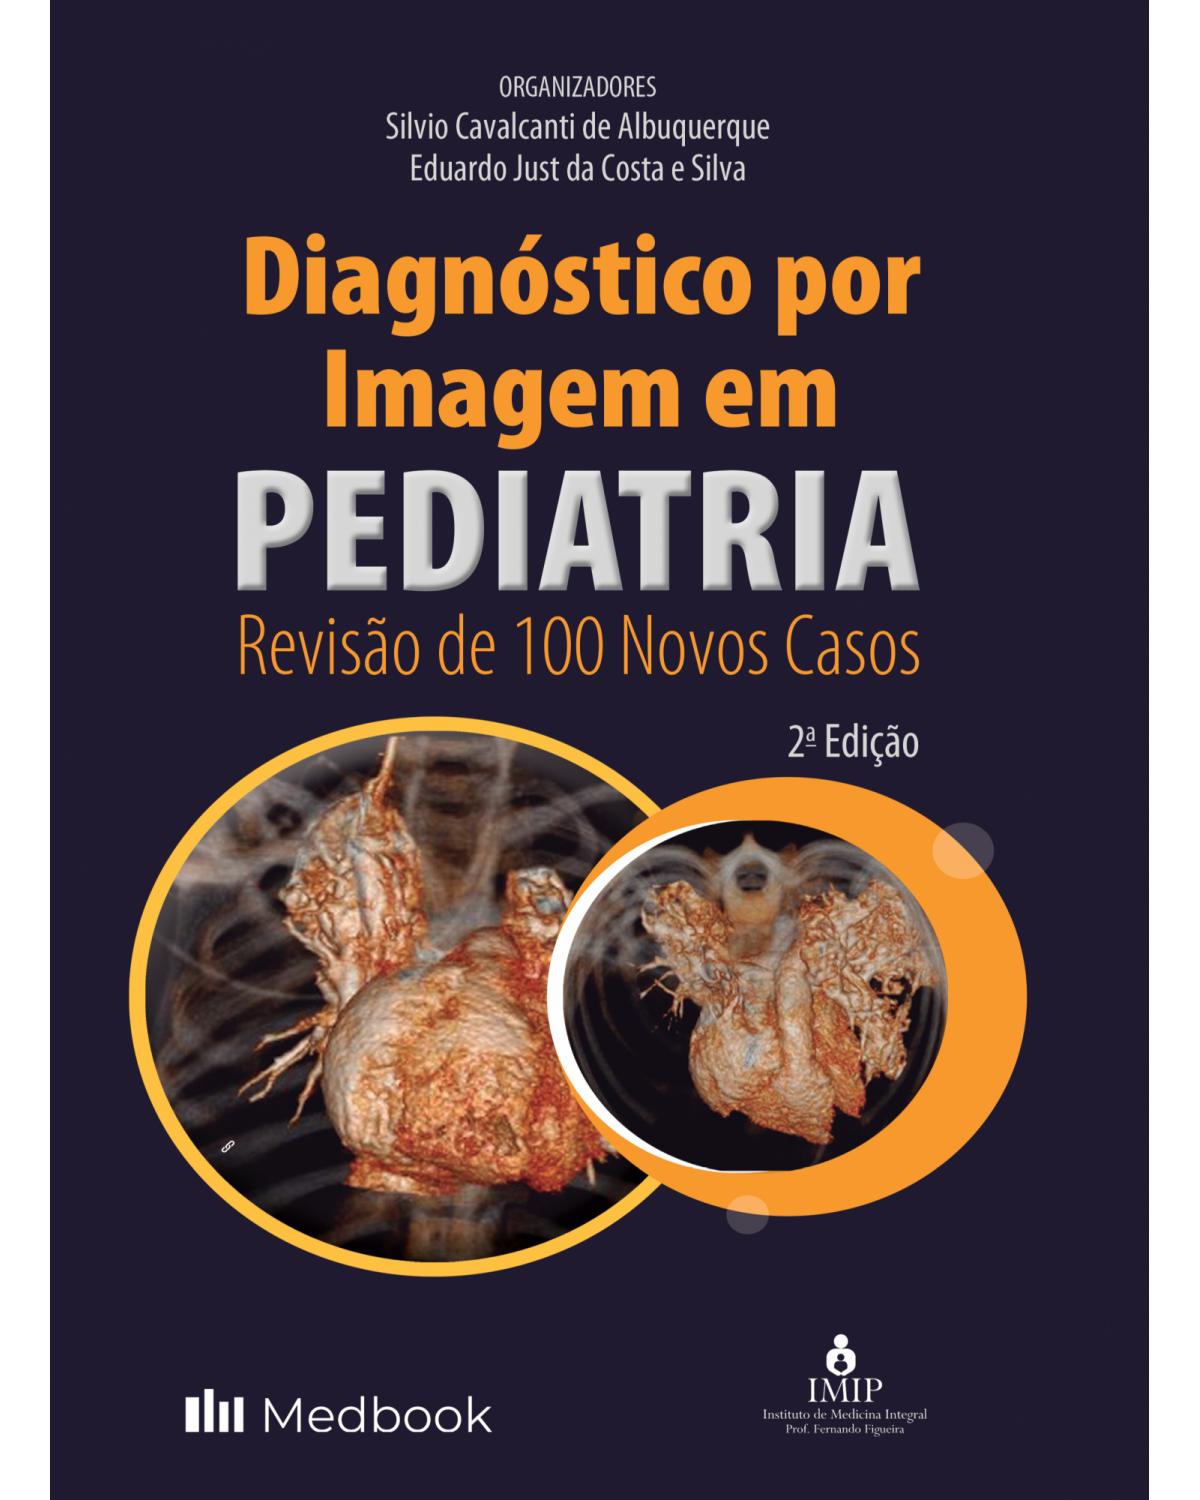 Diagnóstico por imagem em pediatria - revisão de 100 novos casos - 2ª Edição | 2022